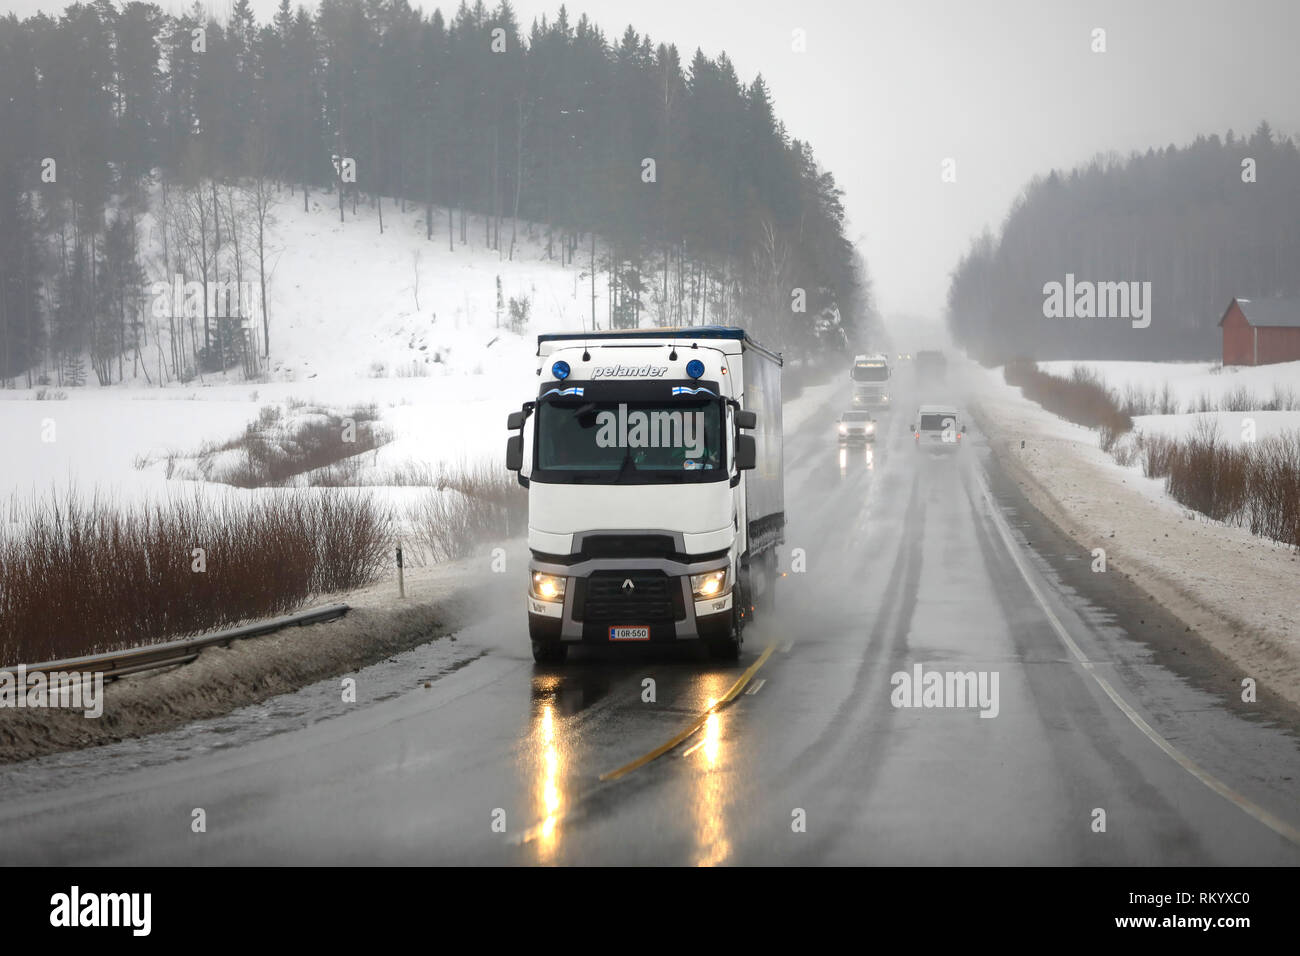 Salo, Finnland - Februar 8, 2019: Weiß Renault Trucks T Auflieger von Pelander transportiert Güter an einem regnerischen Tag des Winters unter Highway Traffic. Stockfoto